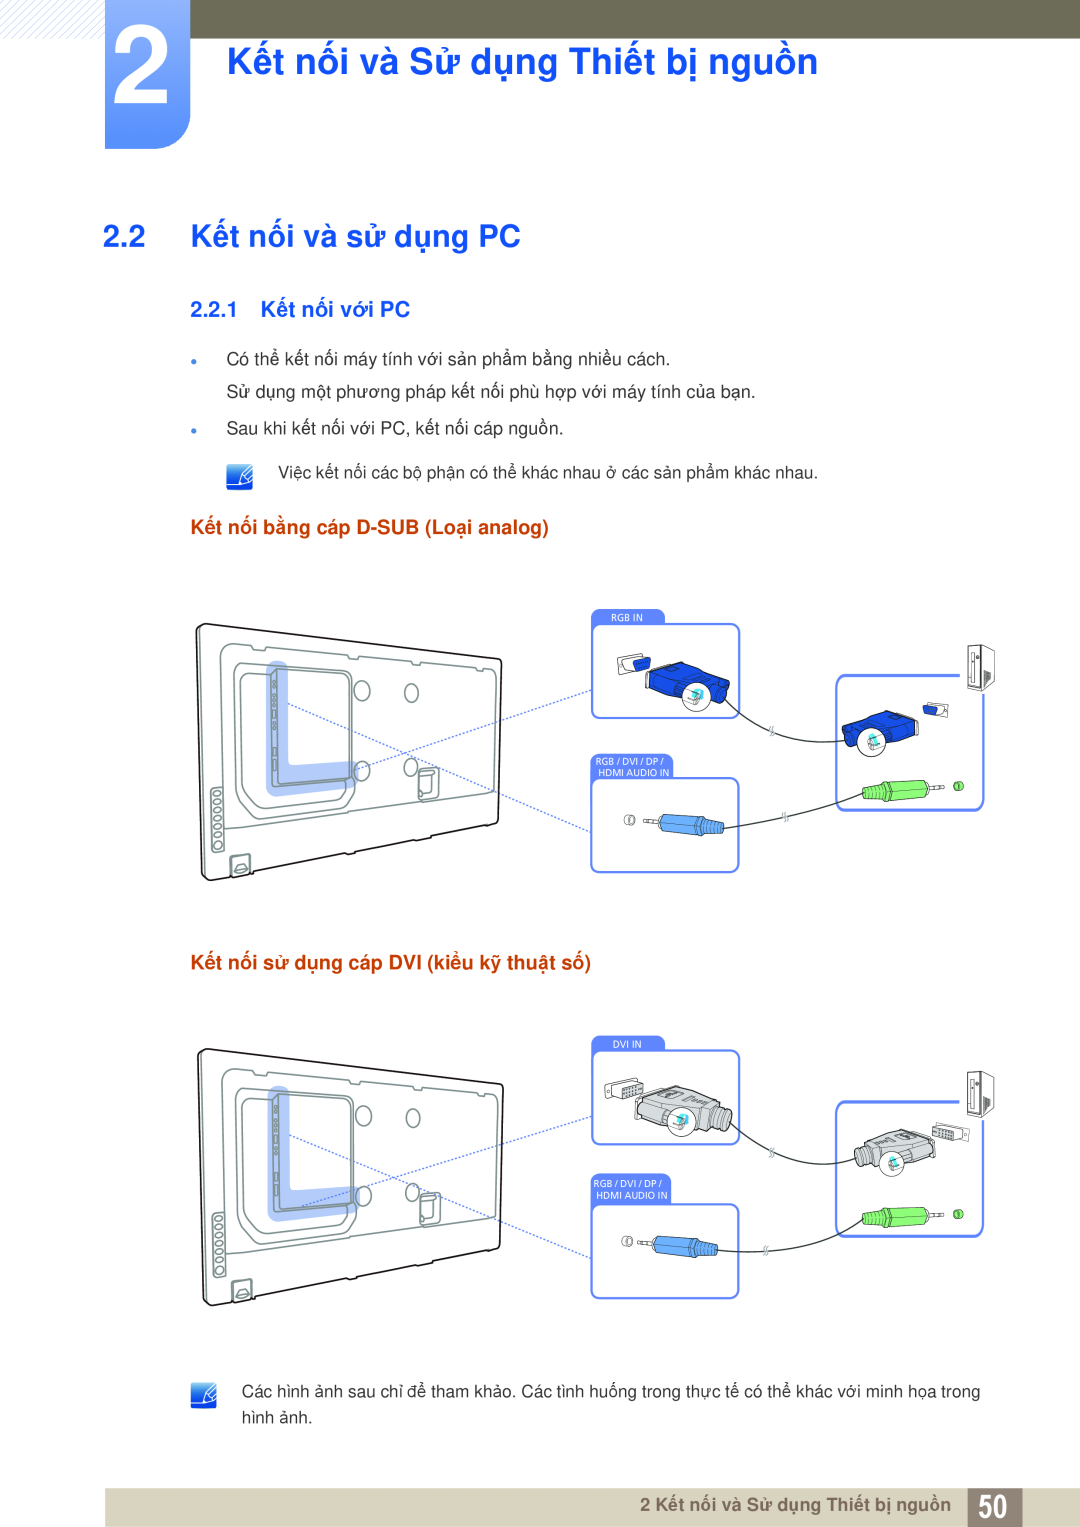 Samsung LH40MEPLGC/XY, LH46DEPLGC/EN 2.2 Kết nối và sử dụng PC, 2.2.1 Kết nối với PC, 2 Kết nối và Sử dụng Thiết bị nguồn 